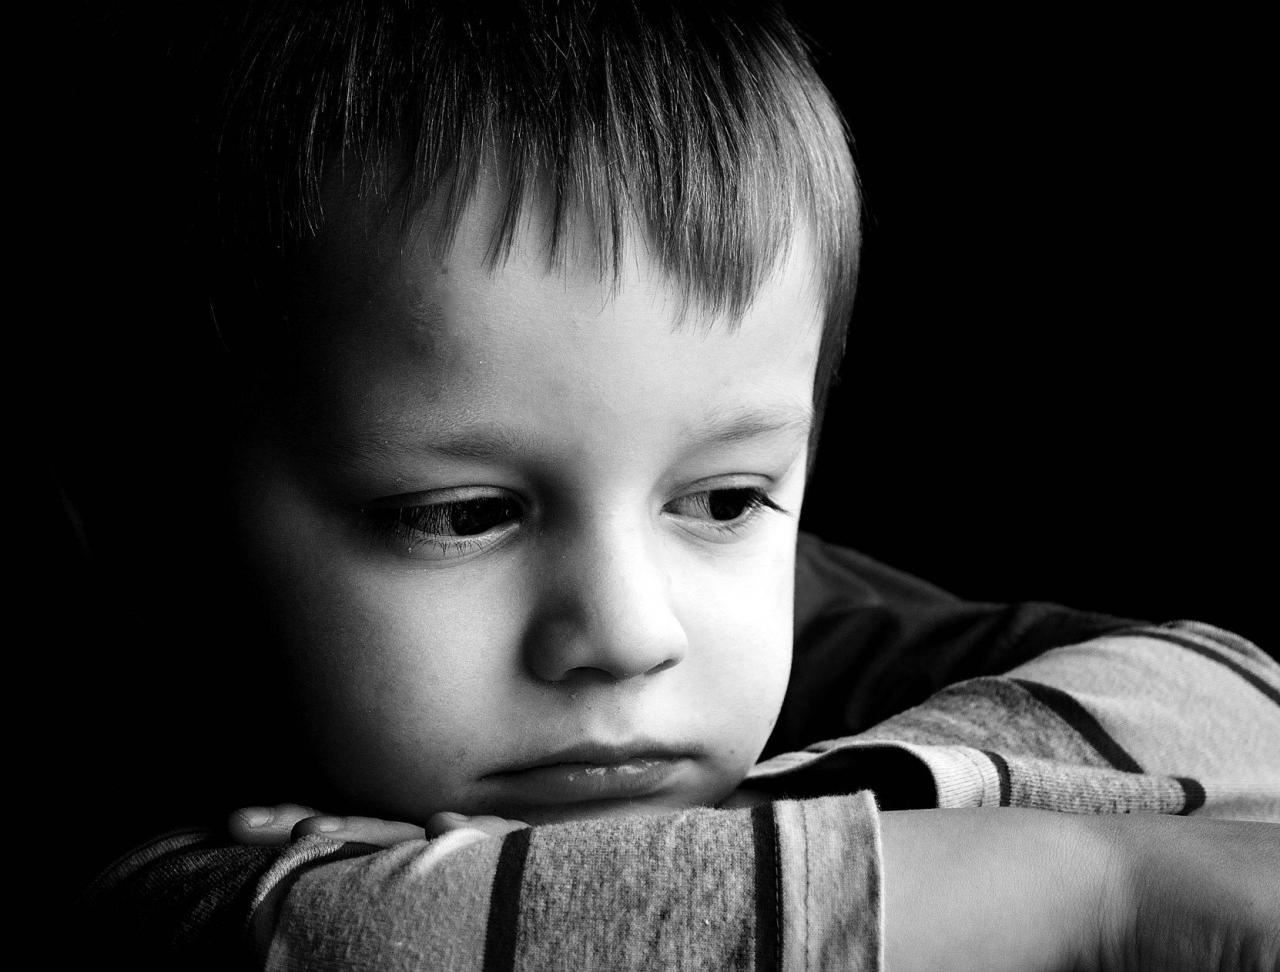 8360 2 صورة طفل حزين، كلام وعبارات عن حزن الاطفال مؤثره ومعبره جدا مرام